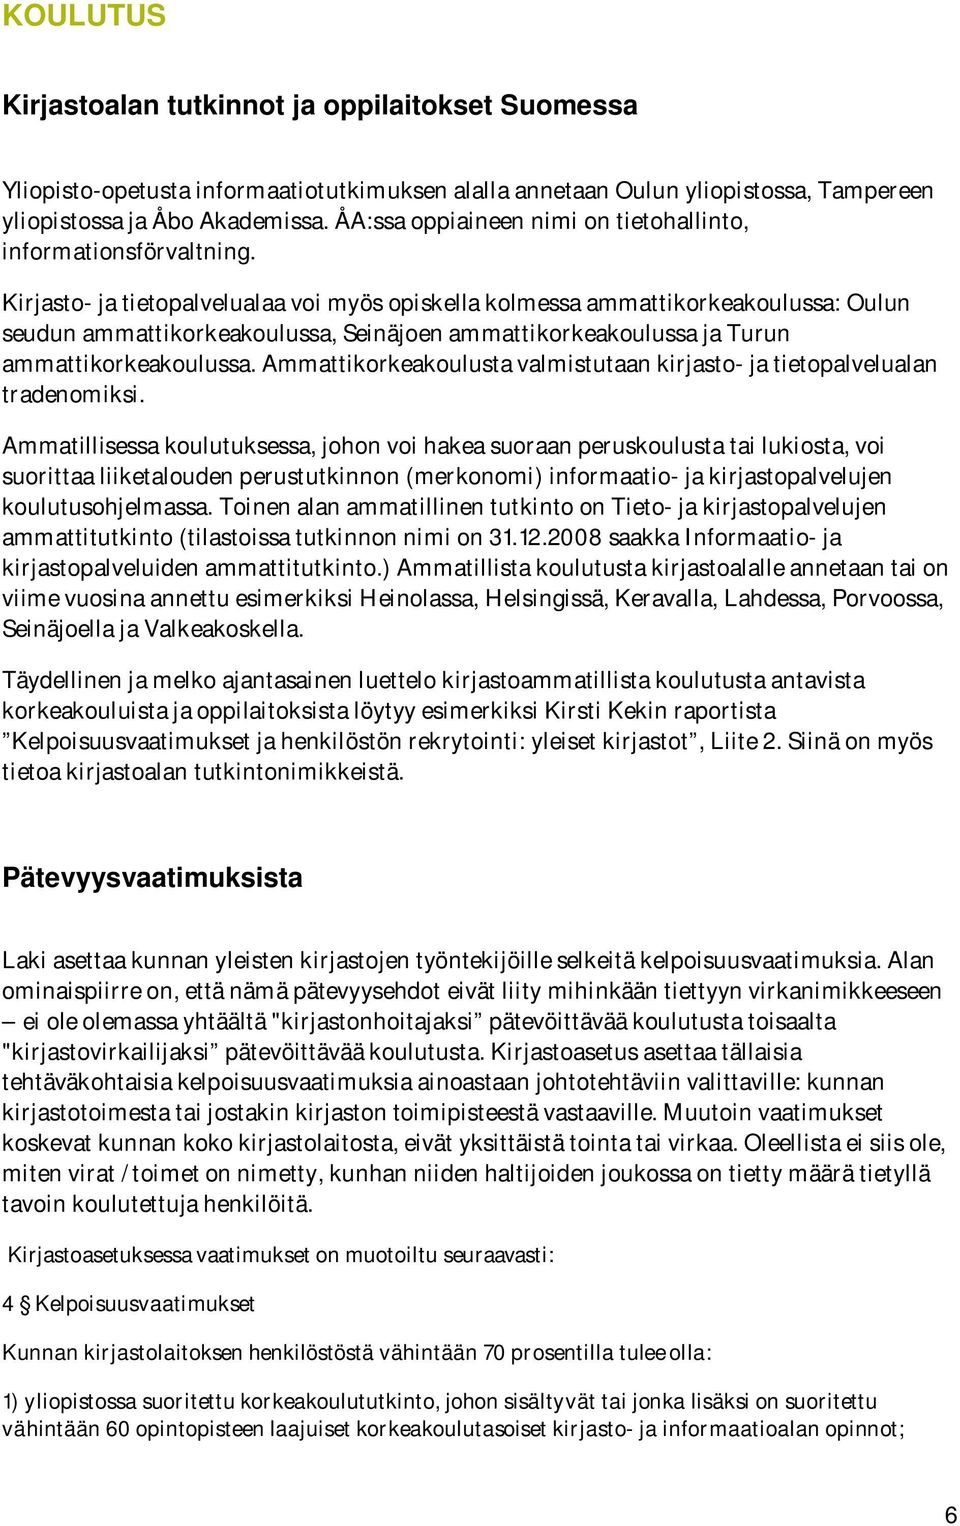 Kirjasto- ja tietopalvelualaa voi myös opiskella kolmessa ammattikorkeakoulussa: Oulun seudun ammattikorkeakoulussa, Seinäjoen ammattikorkeakoulussa ja Turun ammattikorkeakoulussa.